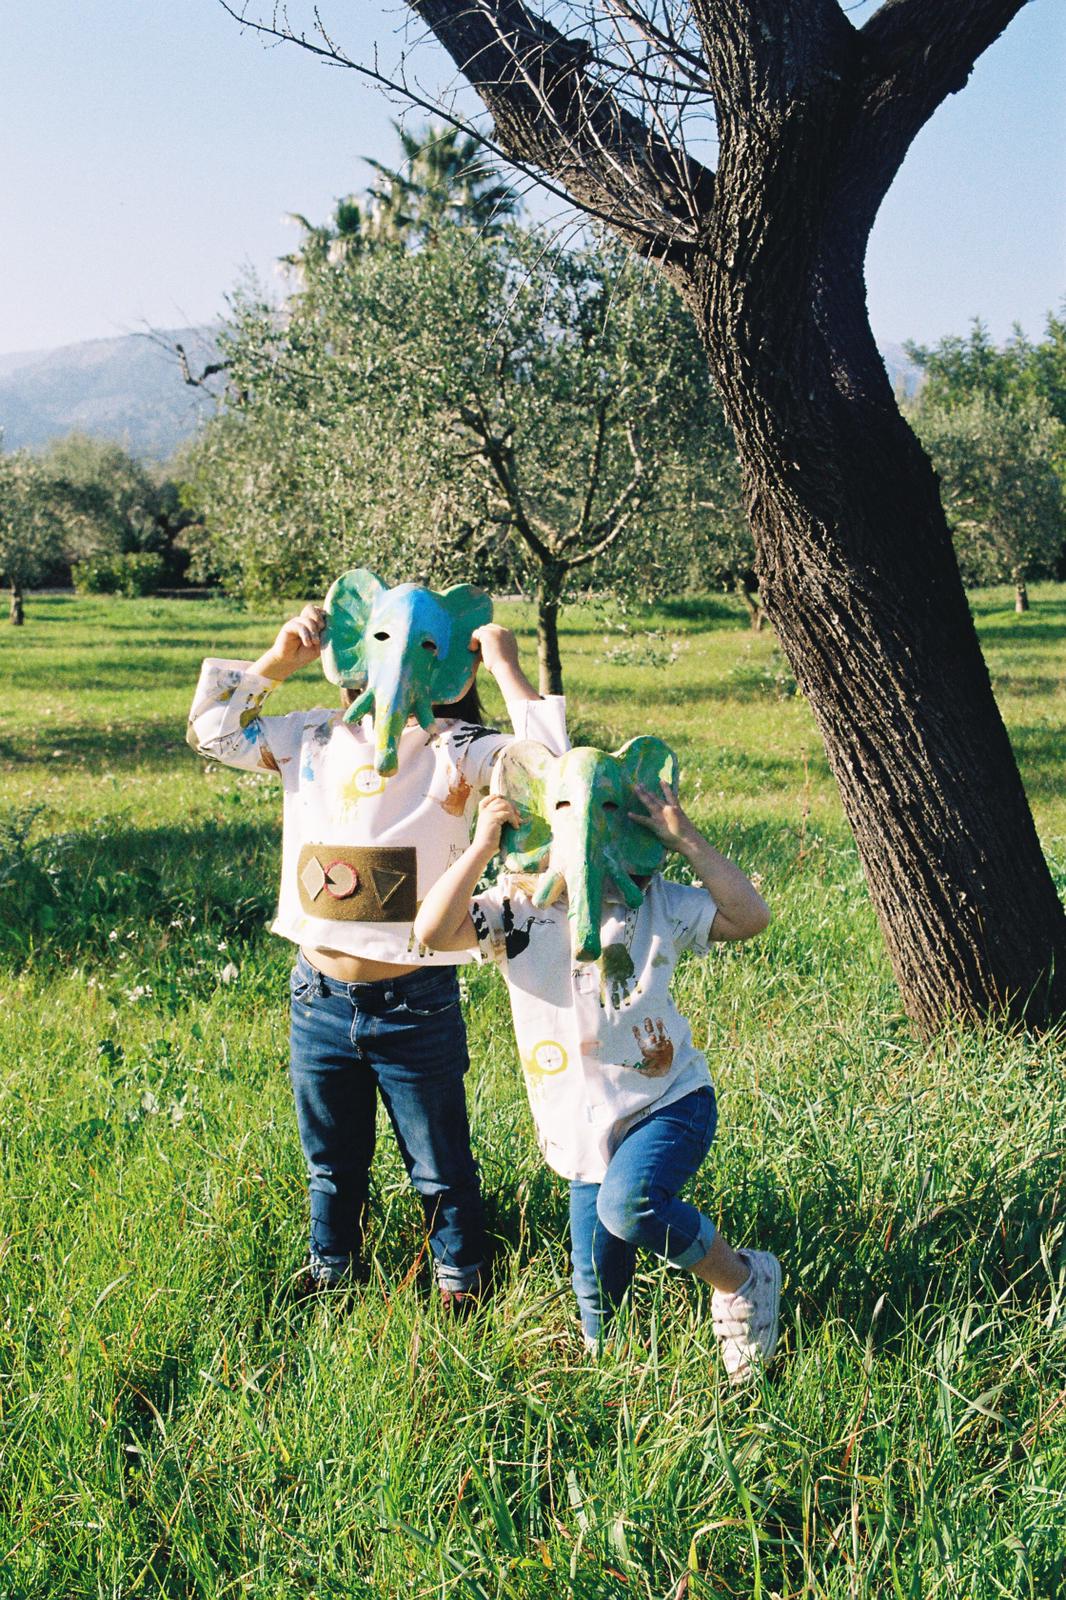 Moda ética, sostenible y orgánica para Bebé, Mamás y Premamás. Inspirada en la naturaleza, en el método Montessori y con el máximo respeto por el medio ambiente.  Moda Pedagógica y Nutricional. Handmade hecha en Mallorca.  Los niños se divierten y aprenden  vistiendose